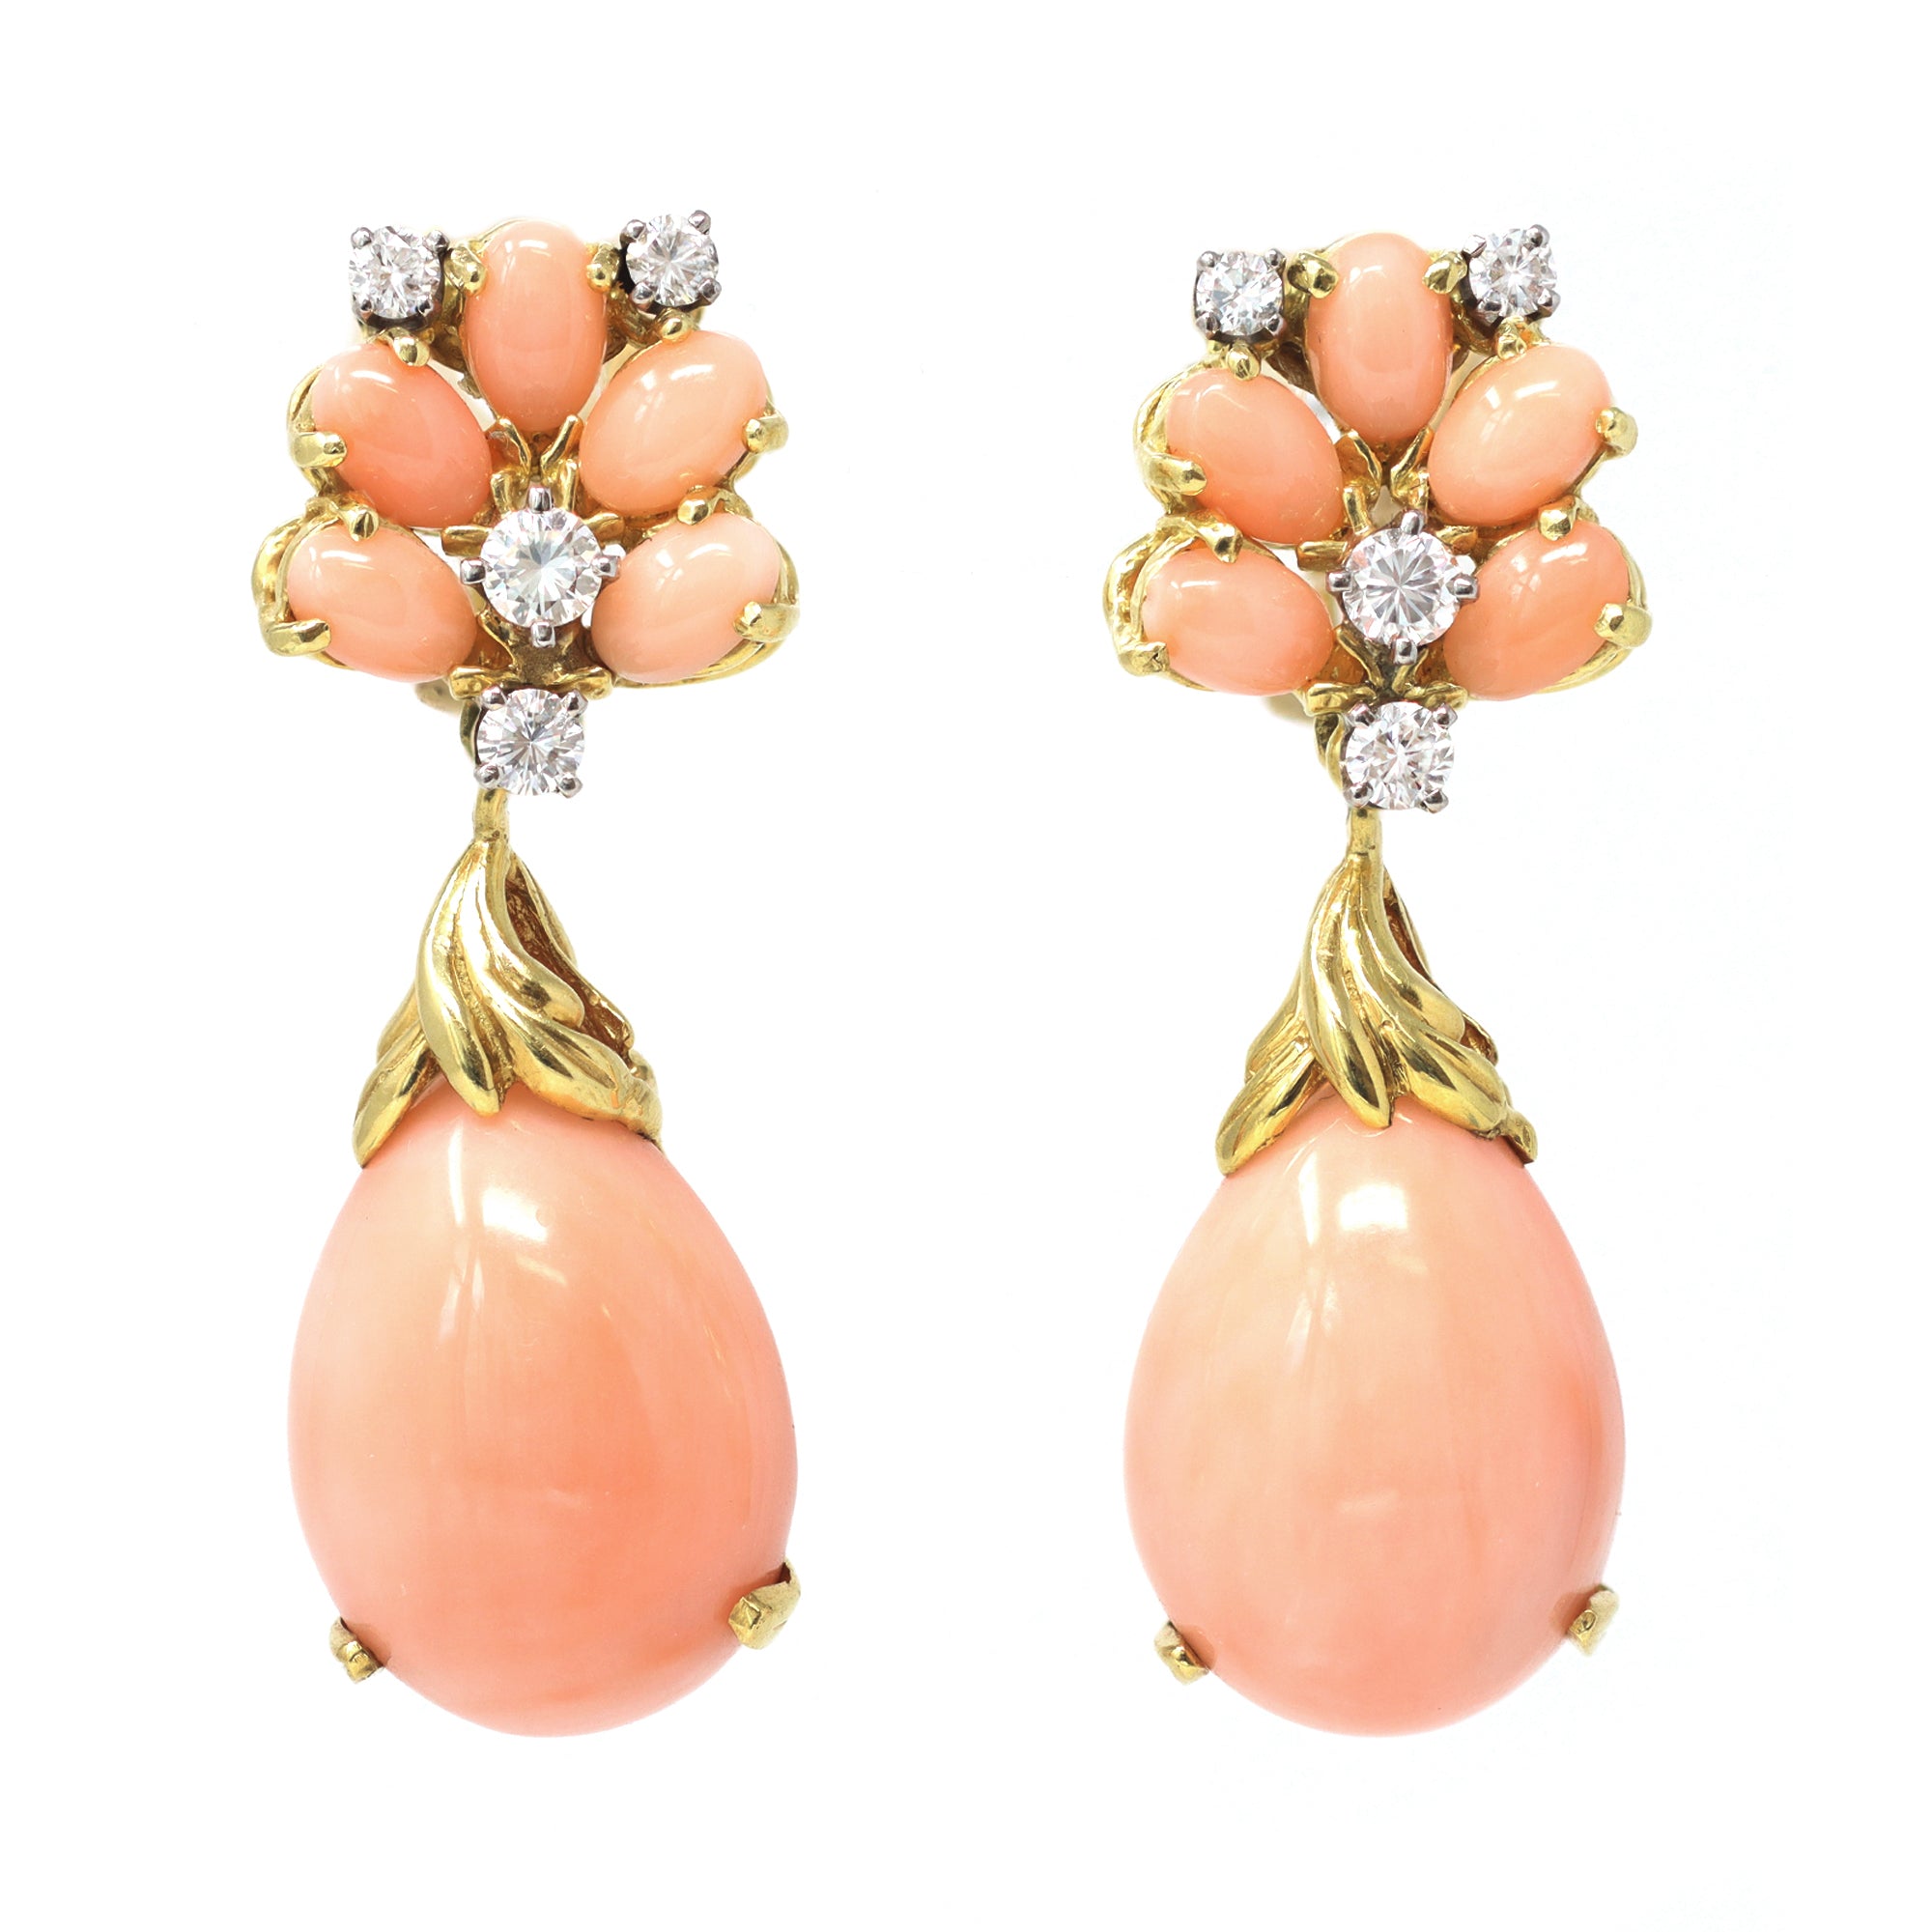 Signed La Triomphe Coral & Diamond Dangling Earrings in 18K